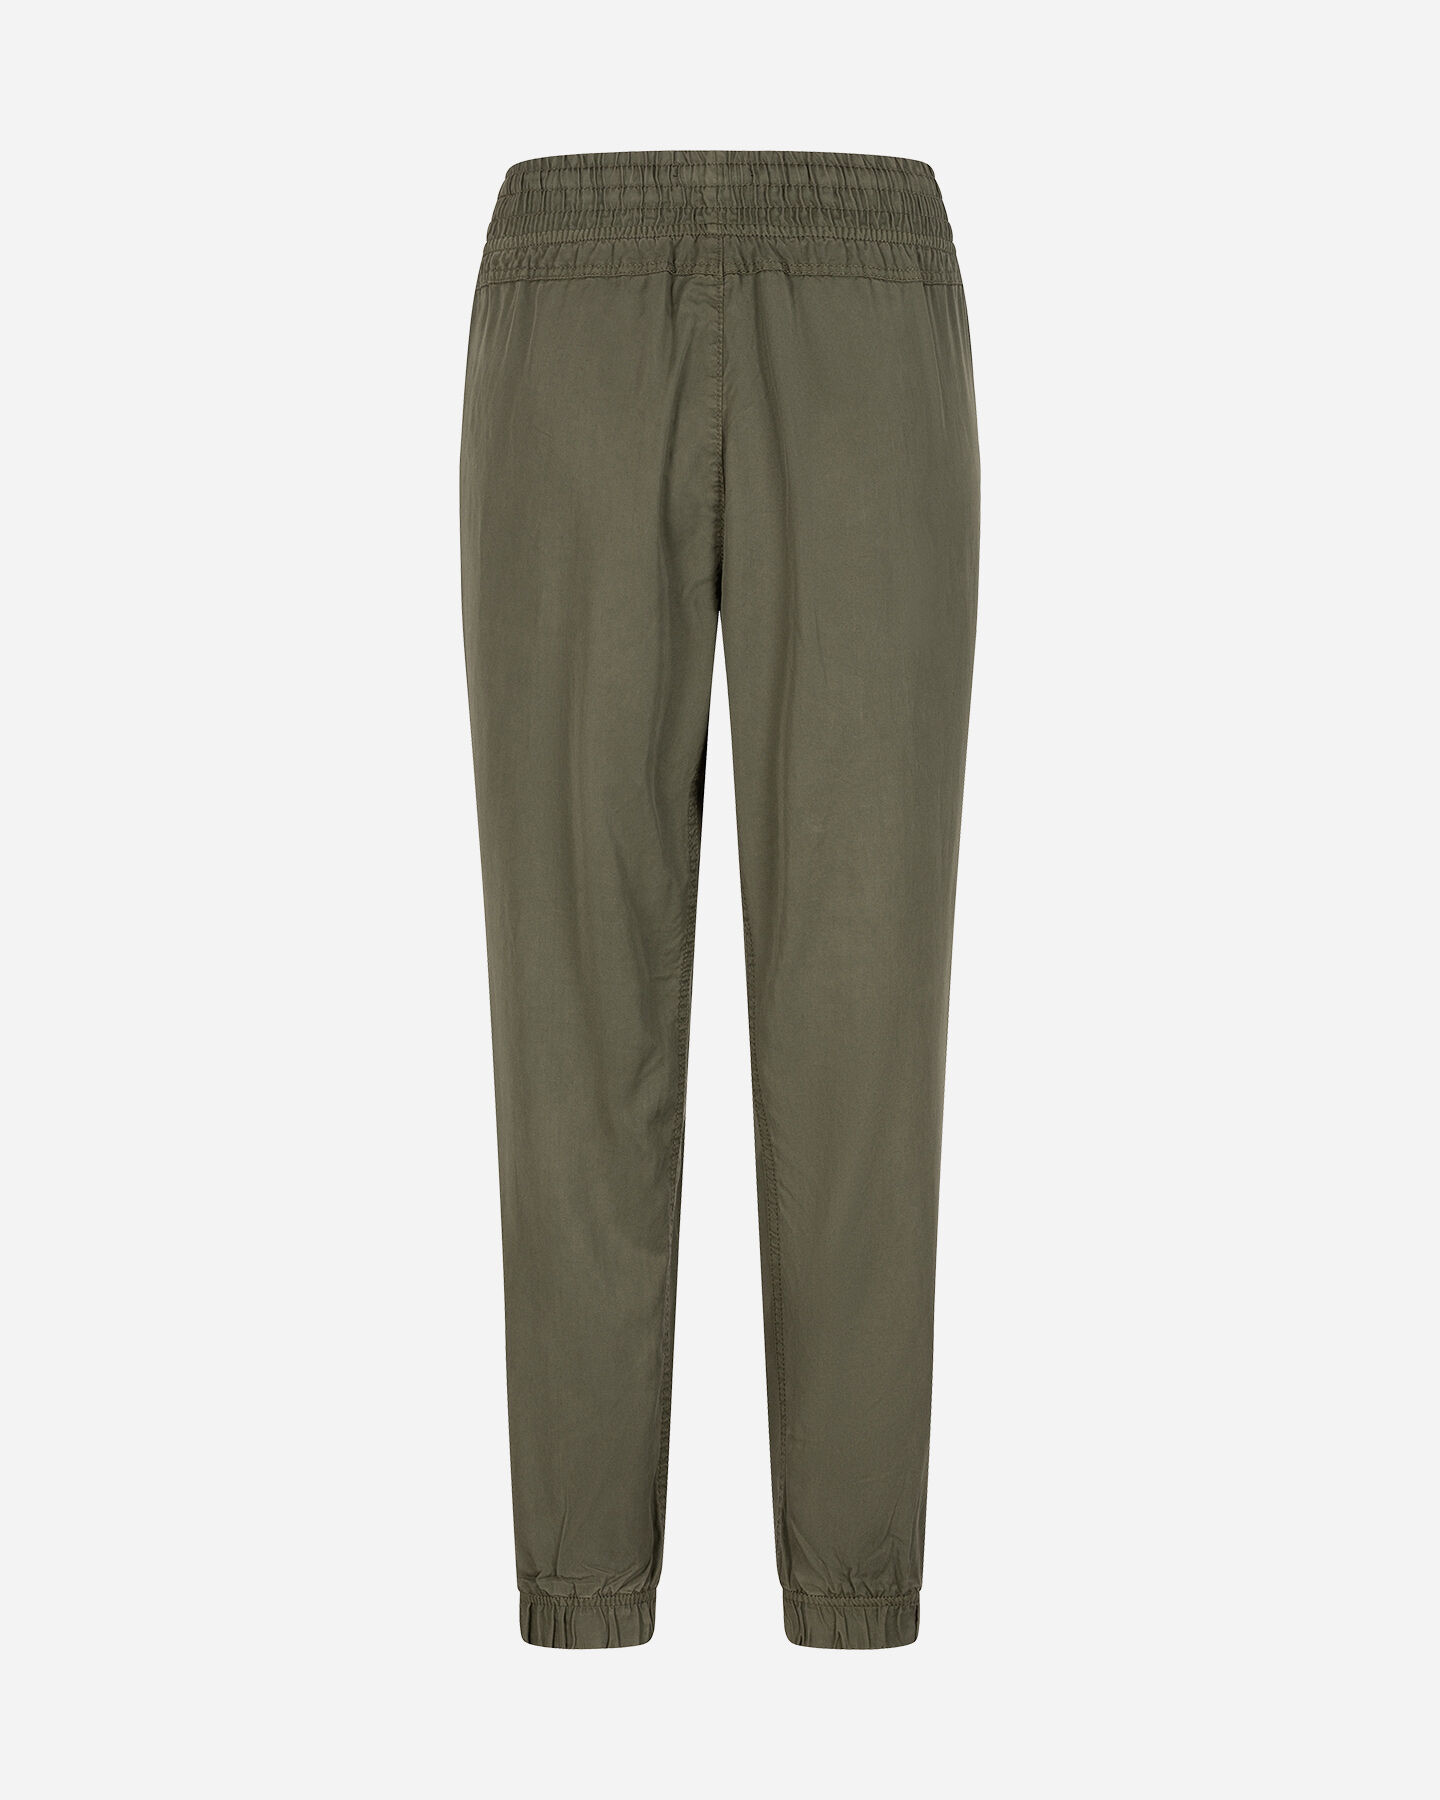  Pantalone MISTRAL ESSENTIAL W S4130009|784|XS scatto 1